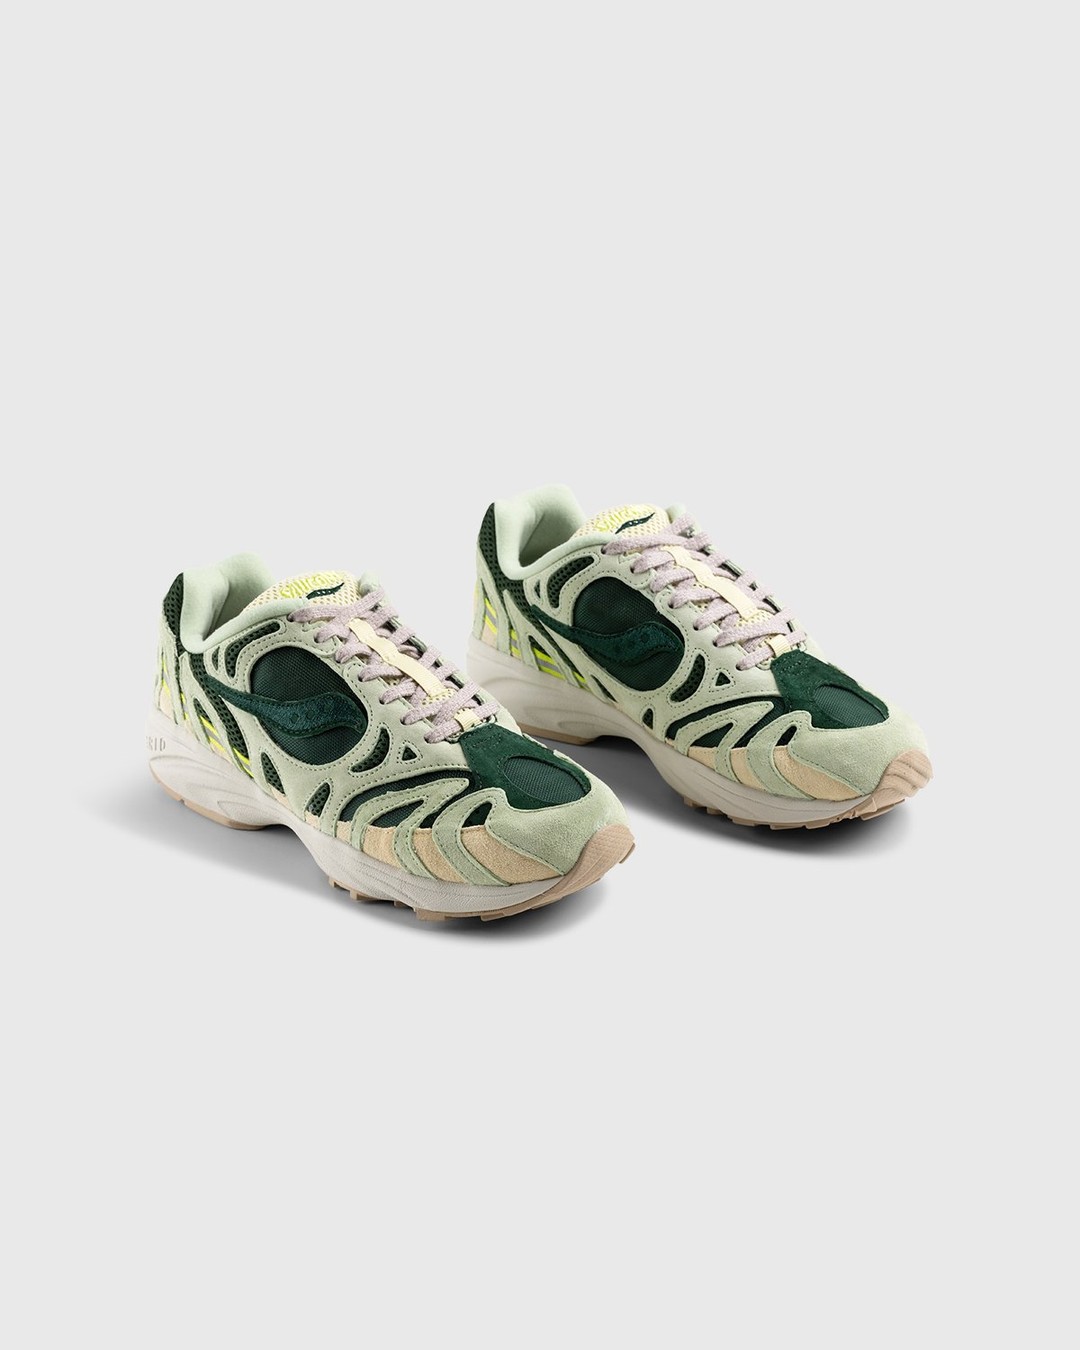 Saucony – Grid Azura 2000 Green - Low Top Sneakers - Green - Image 4